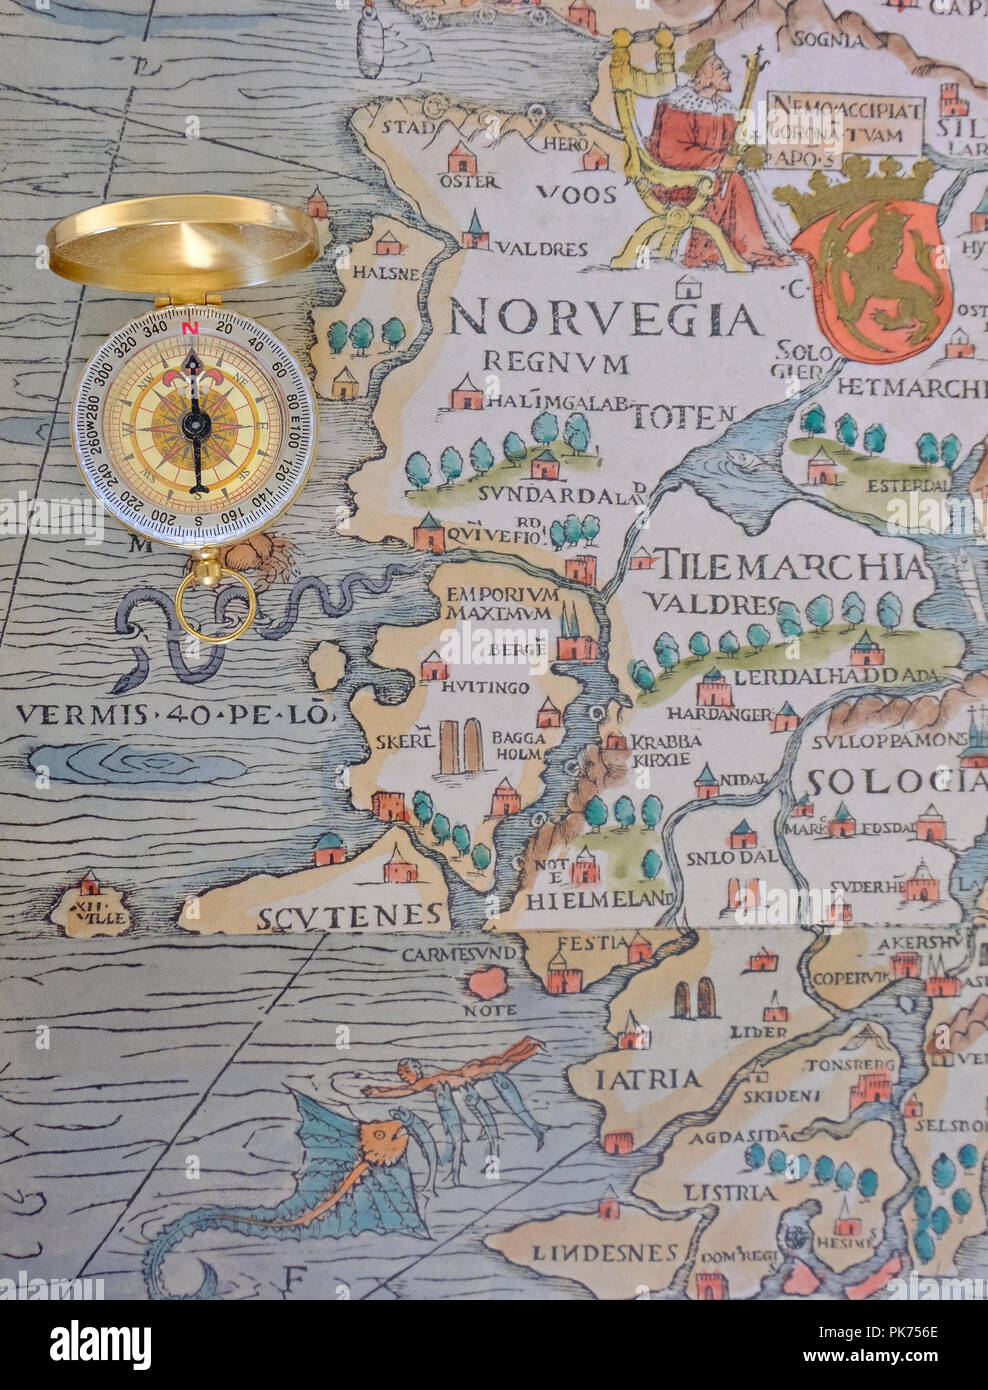 Kompass platziert auf der Vervielfältigung von Abschnitt von Olaus Magnus des 16. Jahrhunderts Marine Karte mit skandinavischen Ländern Stockfoto